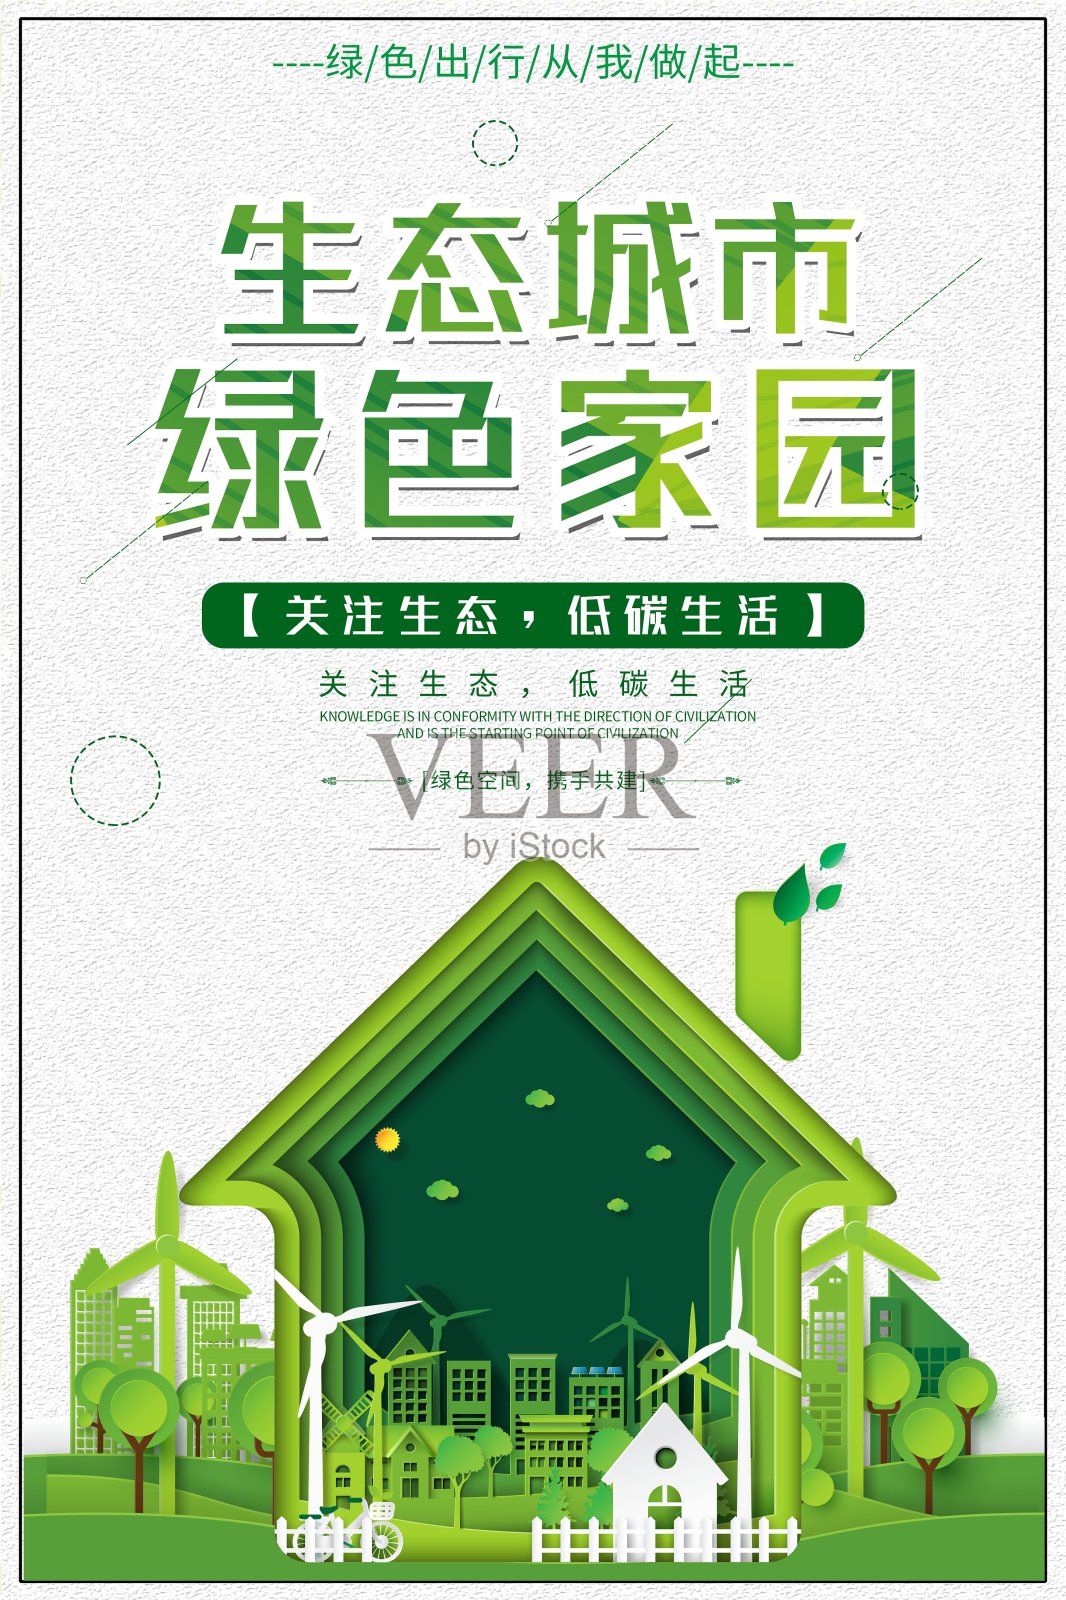 生态城市绿色家园公益宣传海报设计模板素材